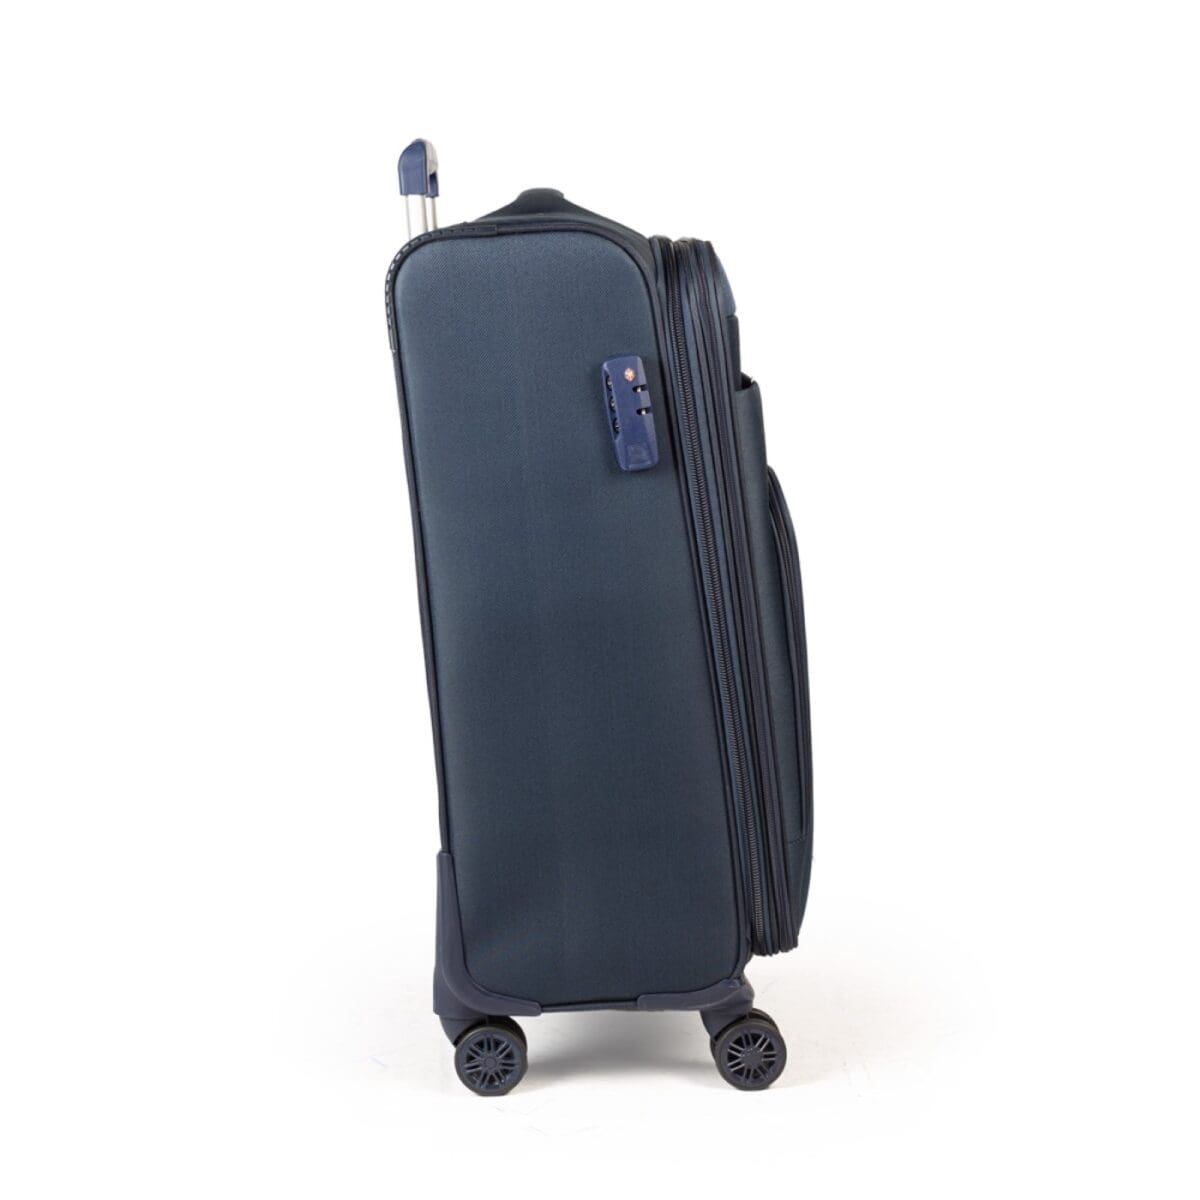 Δεξιά πλευρά βαλίτσας με κλειδαριά σε μπλε χρώμα